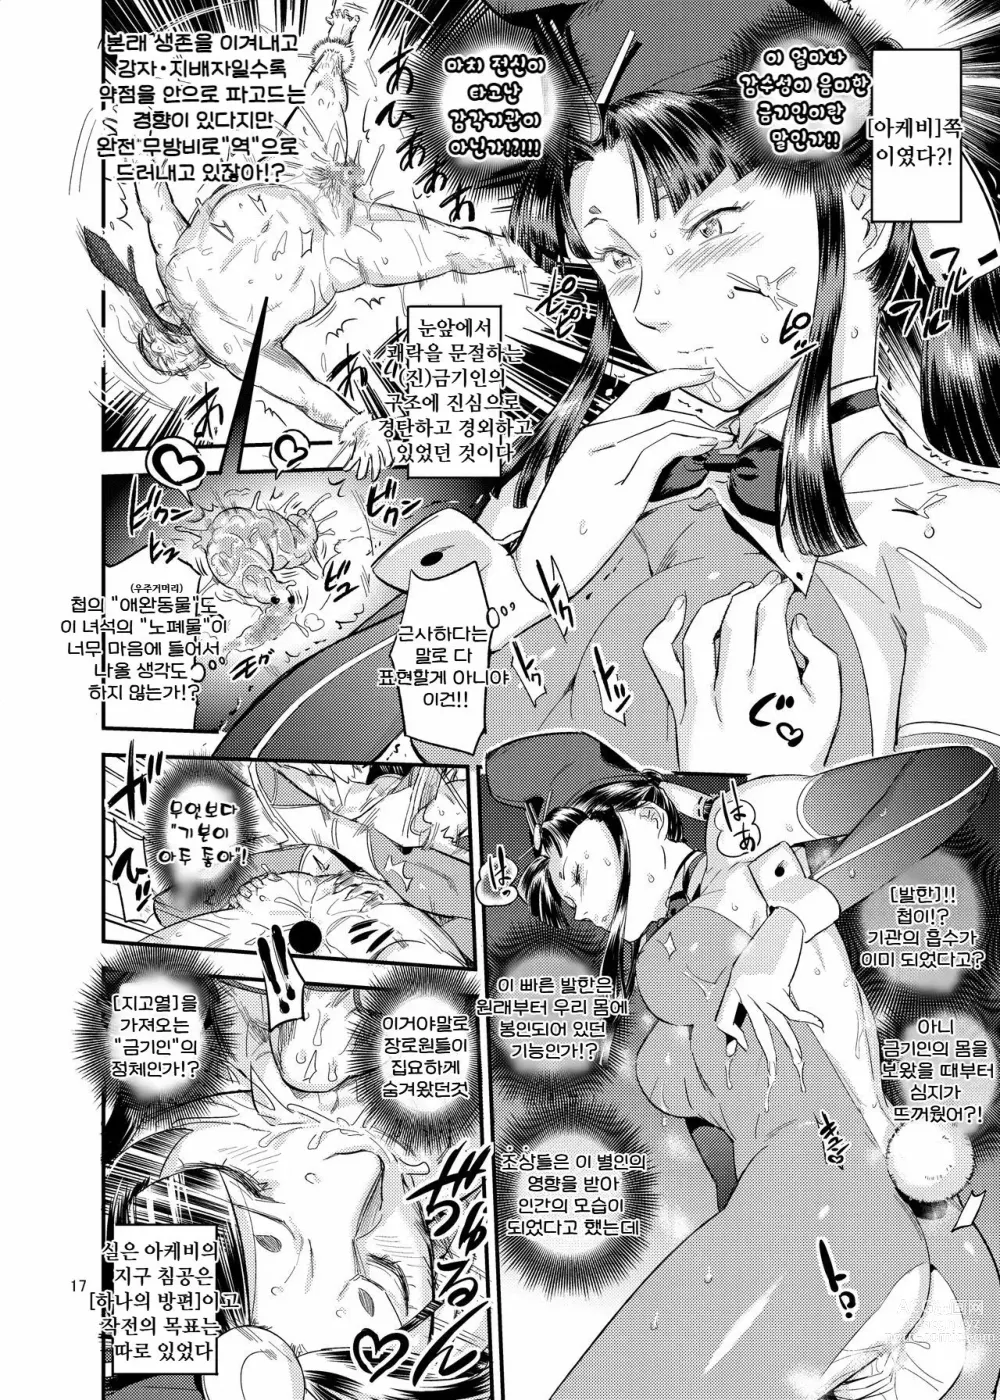 Page 17 of doujinshi 타케토리 공주의 버섯 따기 이야기